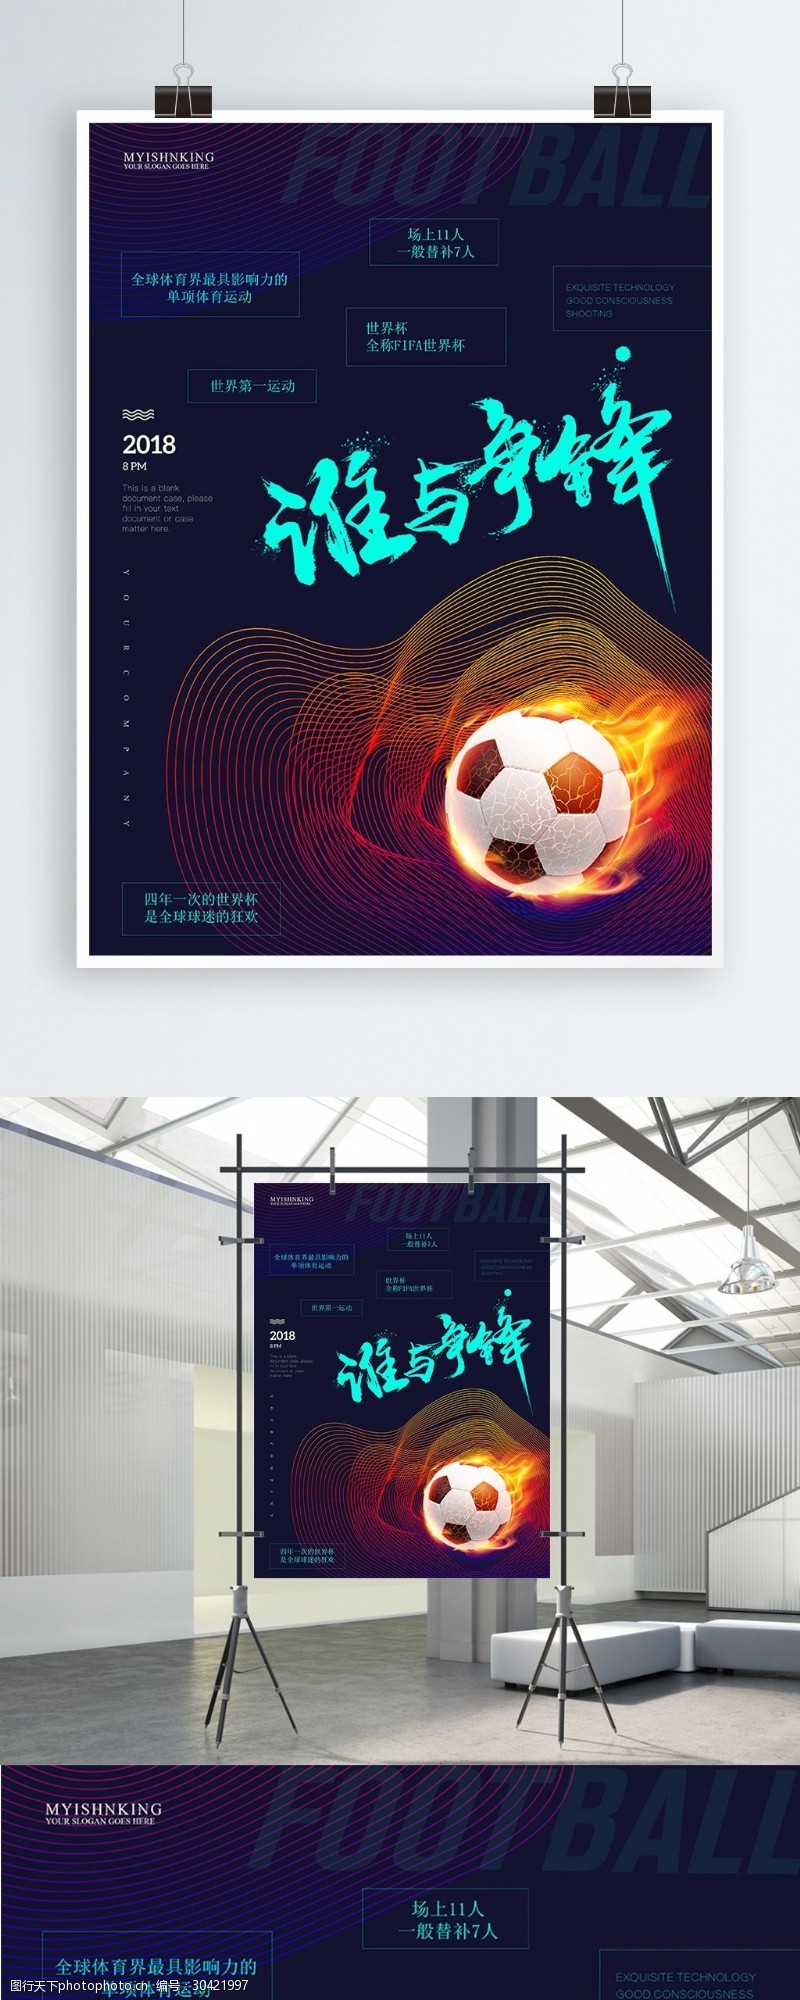 美式足球深蓝色彩色线条创意足球运动海报设计